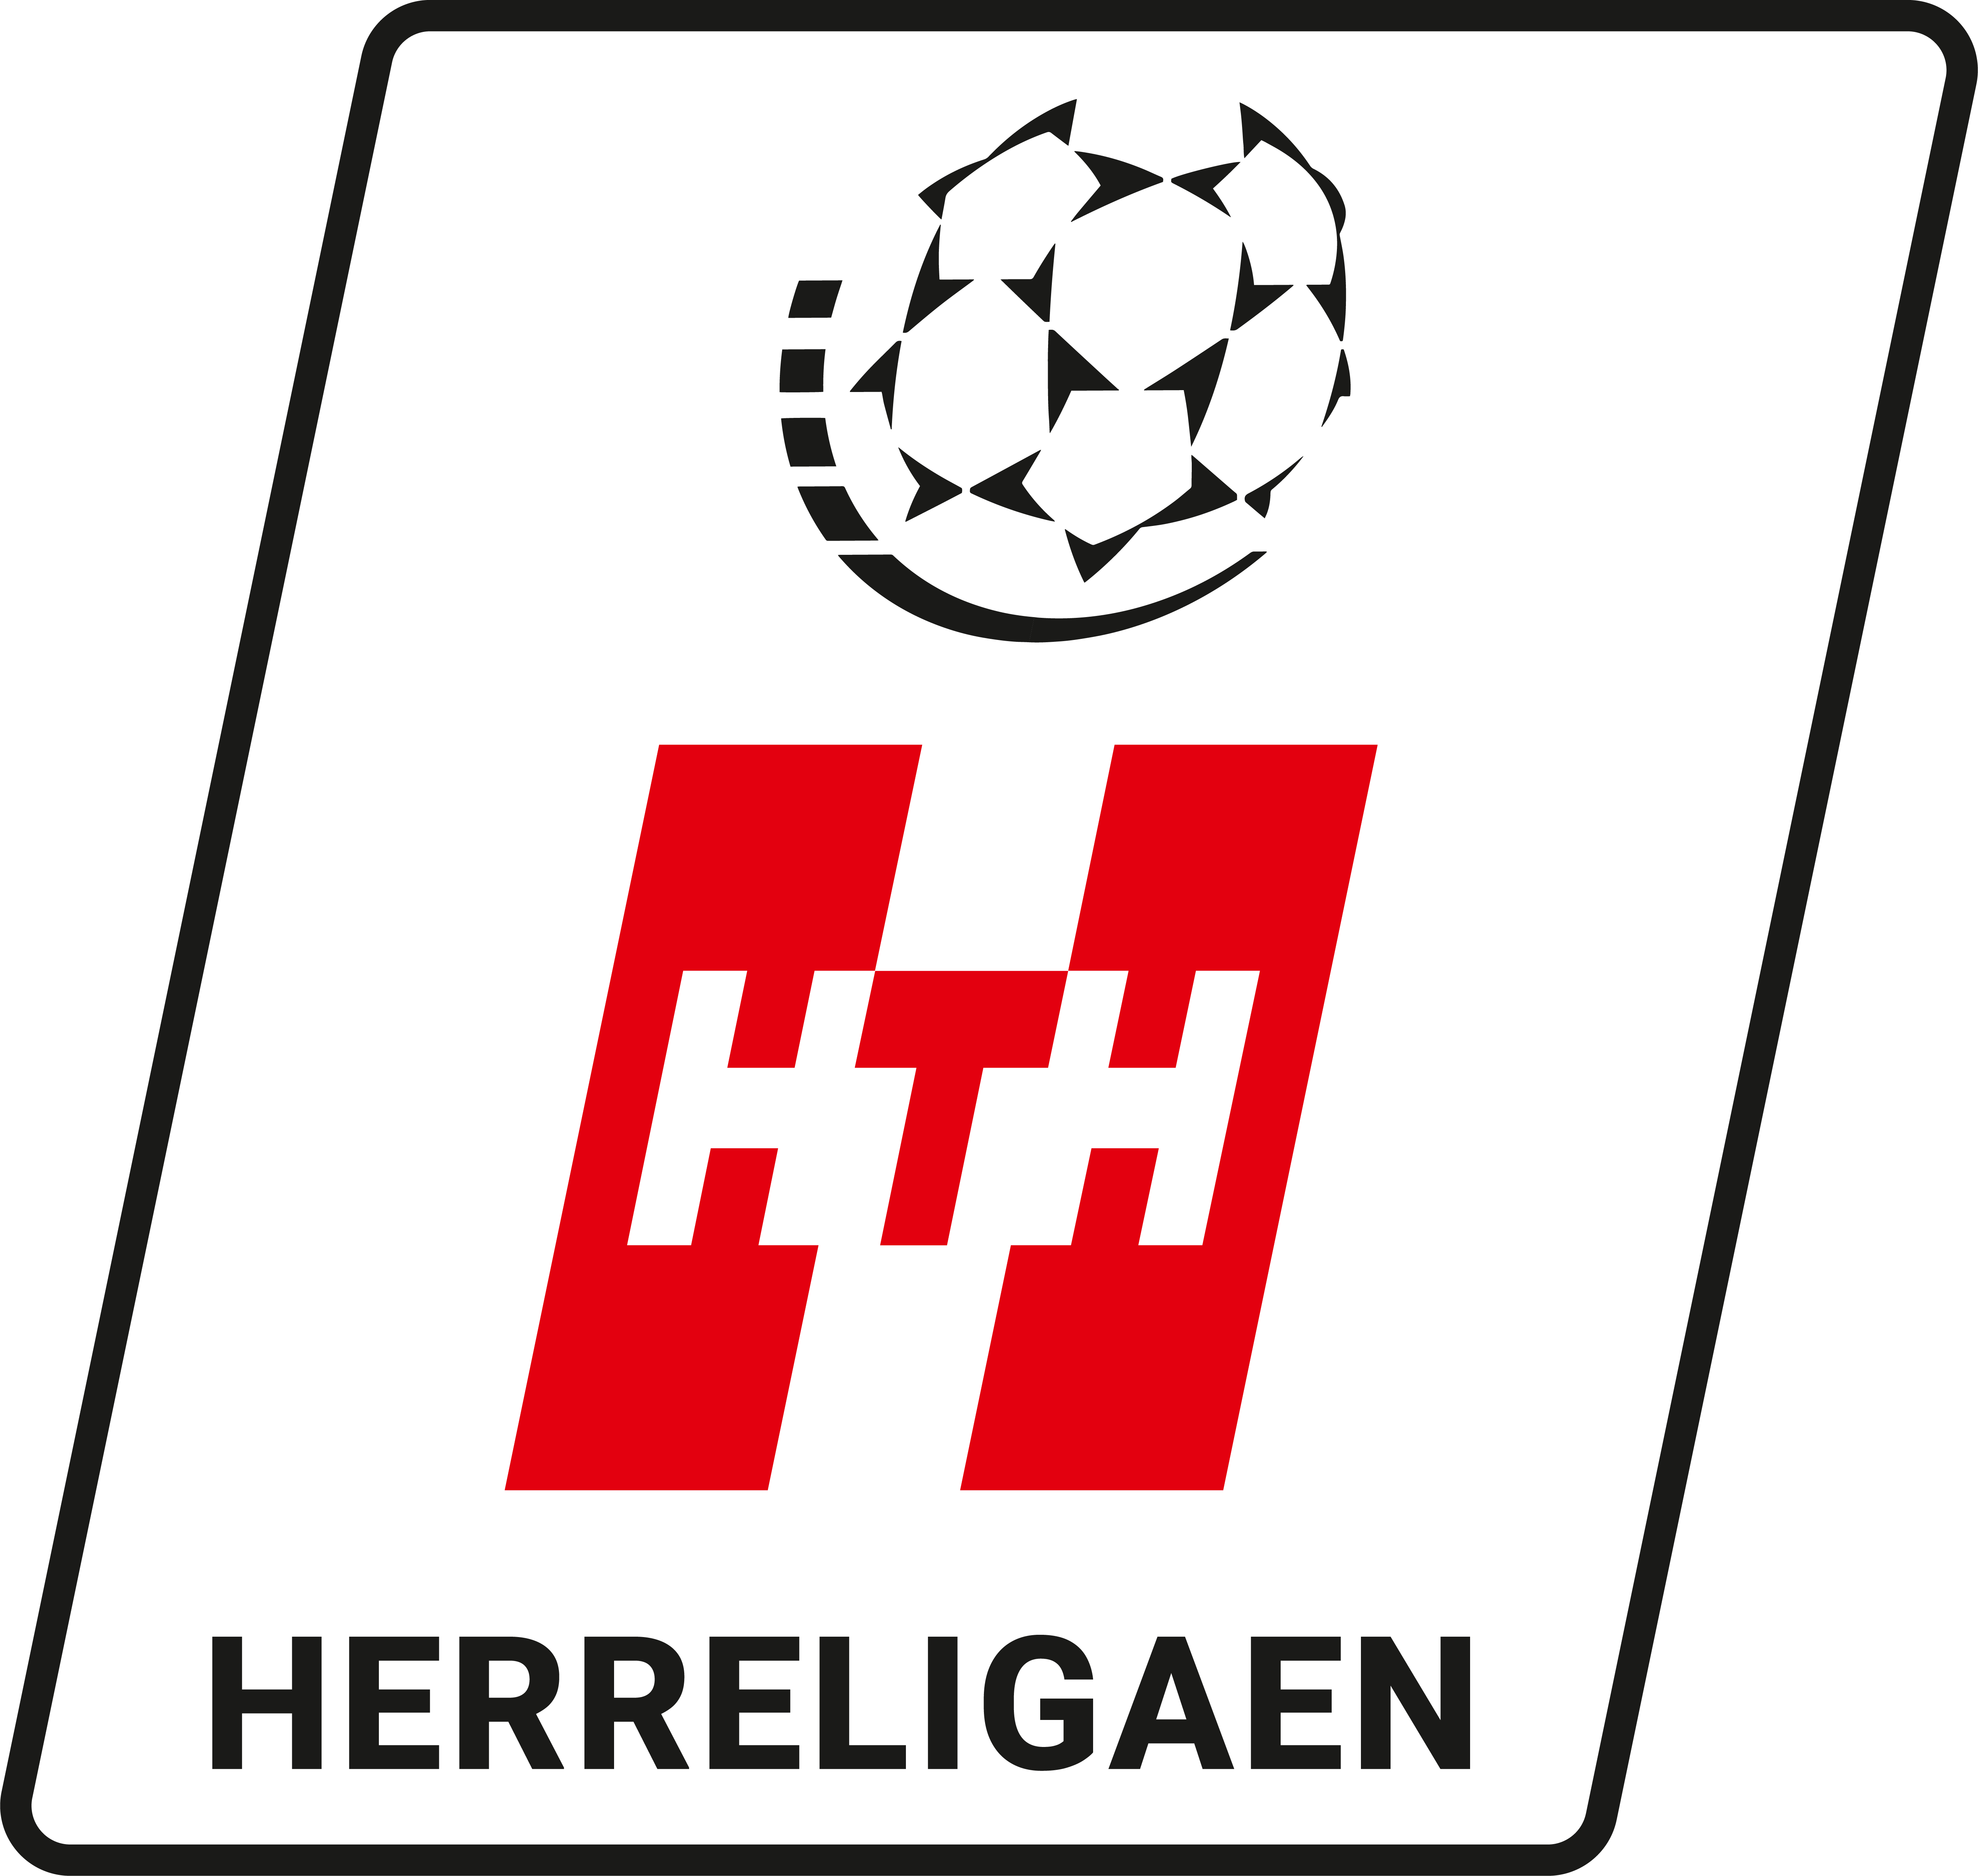 hth_herreligaen_logo.png